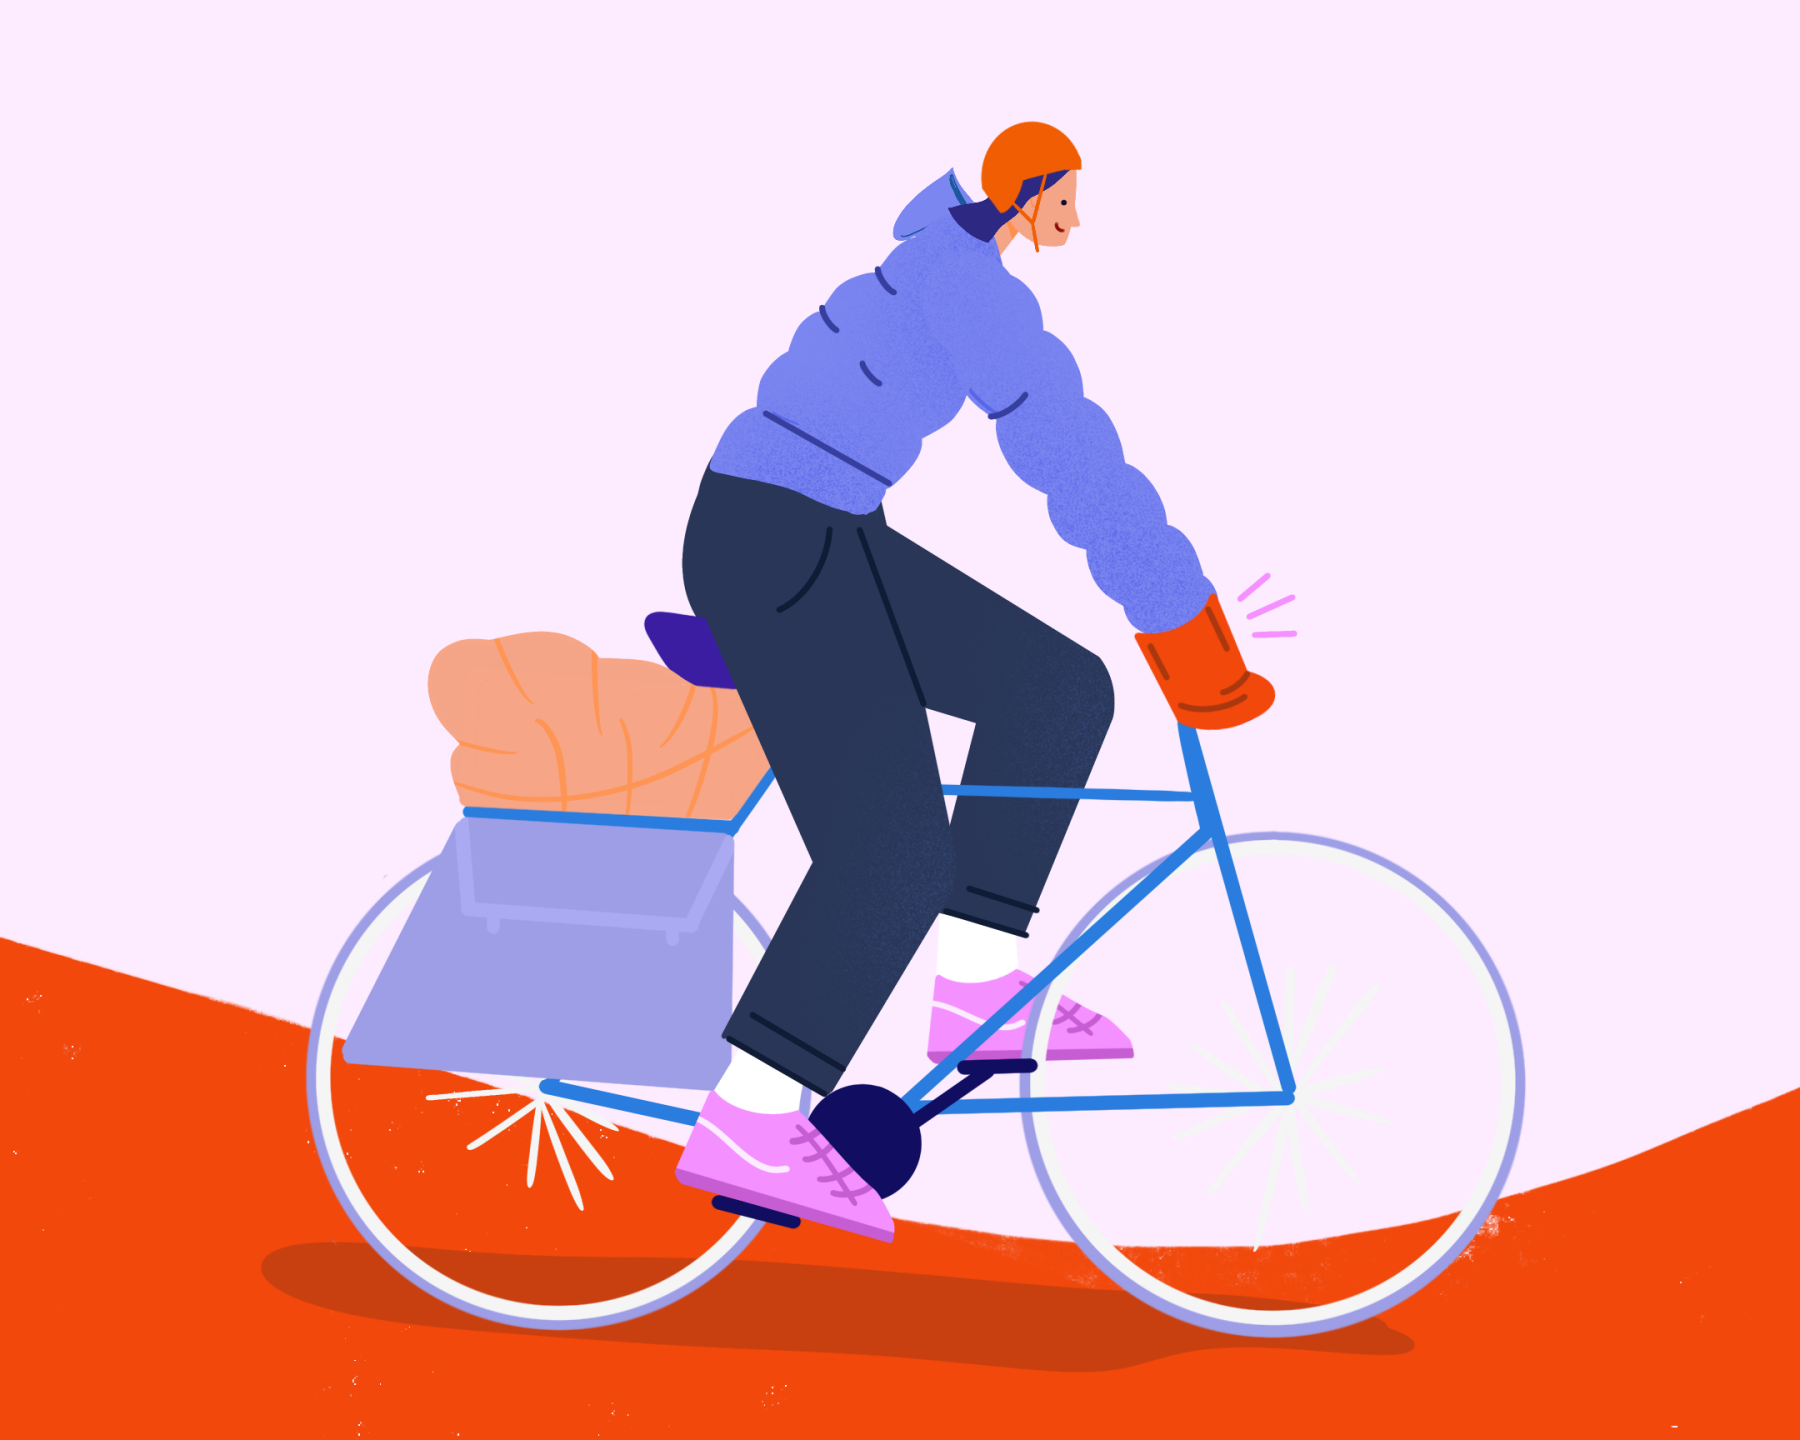 Tuto couture / DIY : manchons pour vélo (avec patron gratuit dedans)